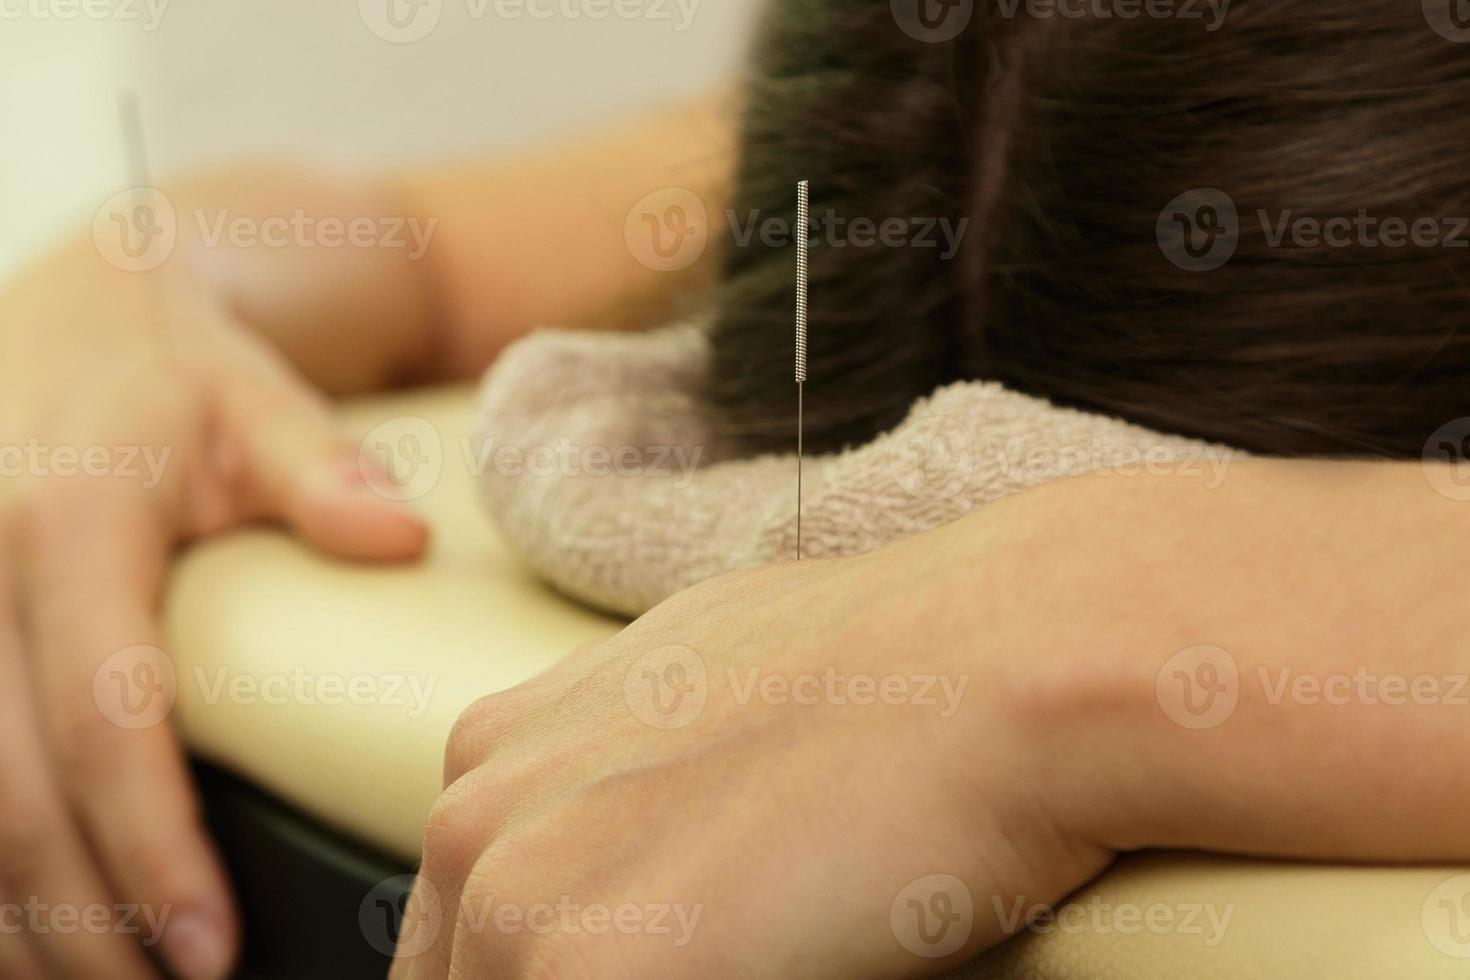 vrouw hand- met staal naalden gedurende procedure van acupunctuur behandeling foto